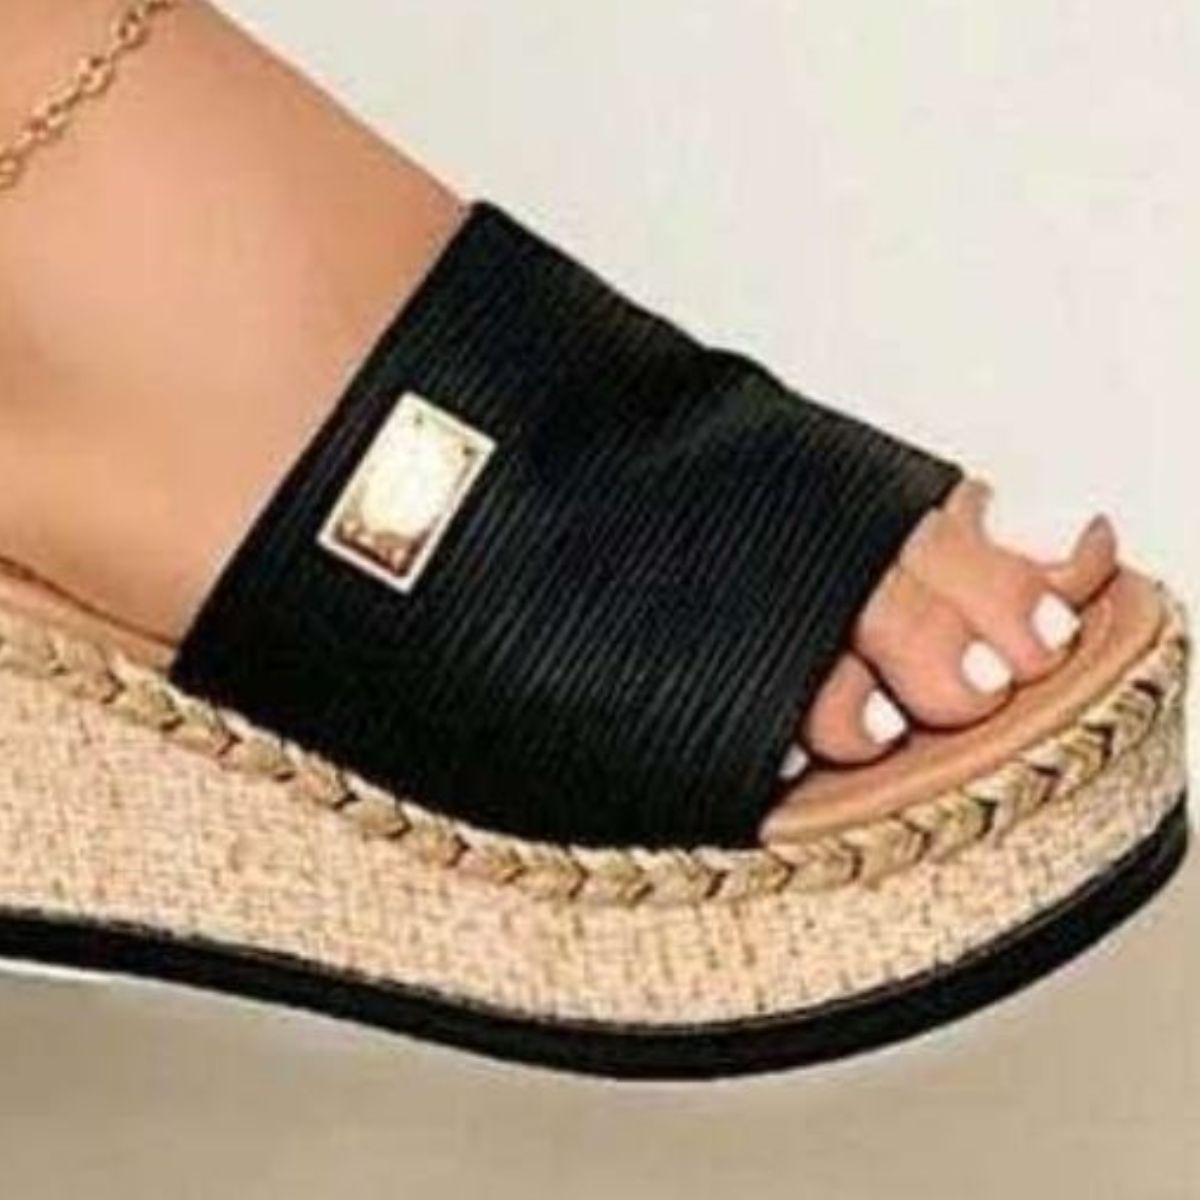 Veronica Open Toe Sandals